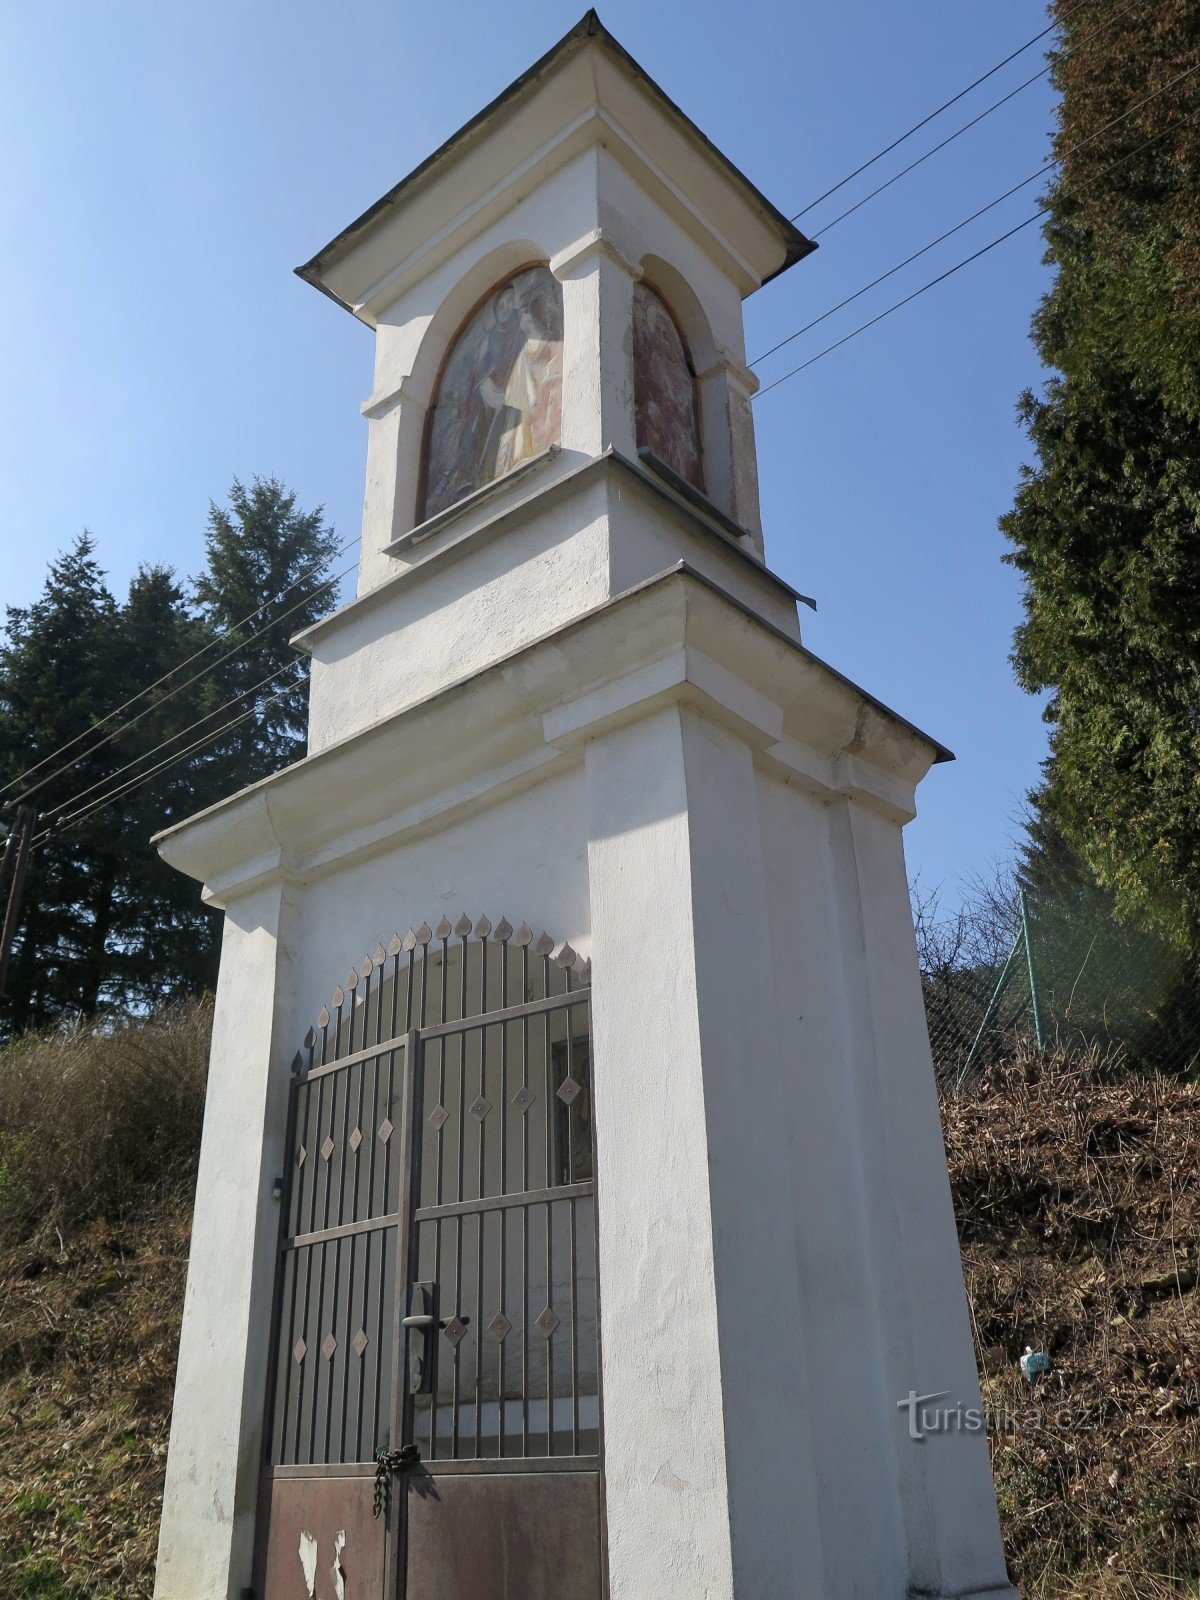 Velké Opatovice – Pyhän Nikolauksen kappeli. Rosalie